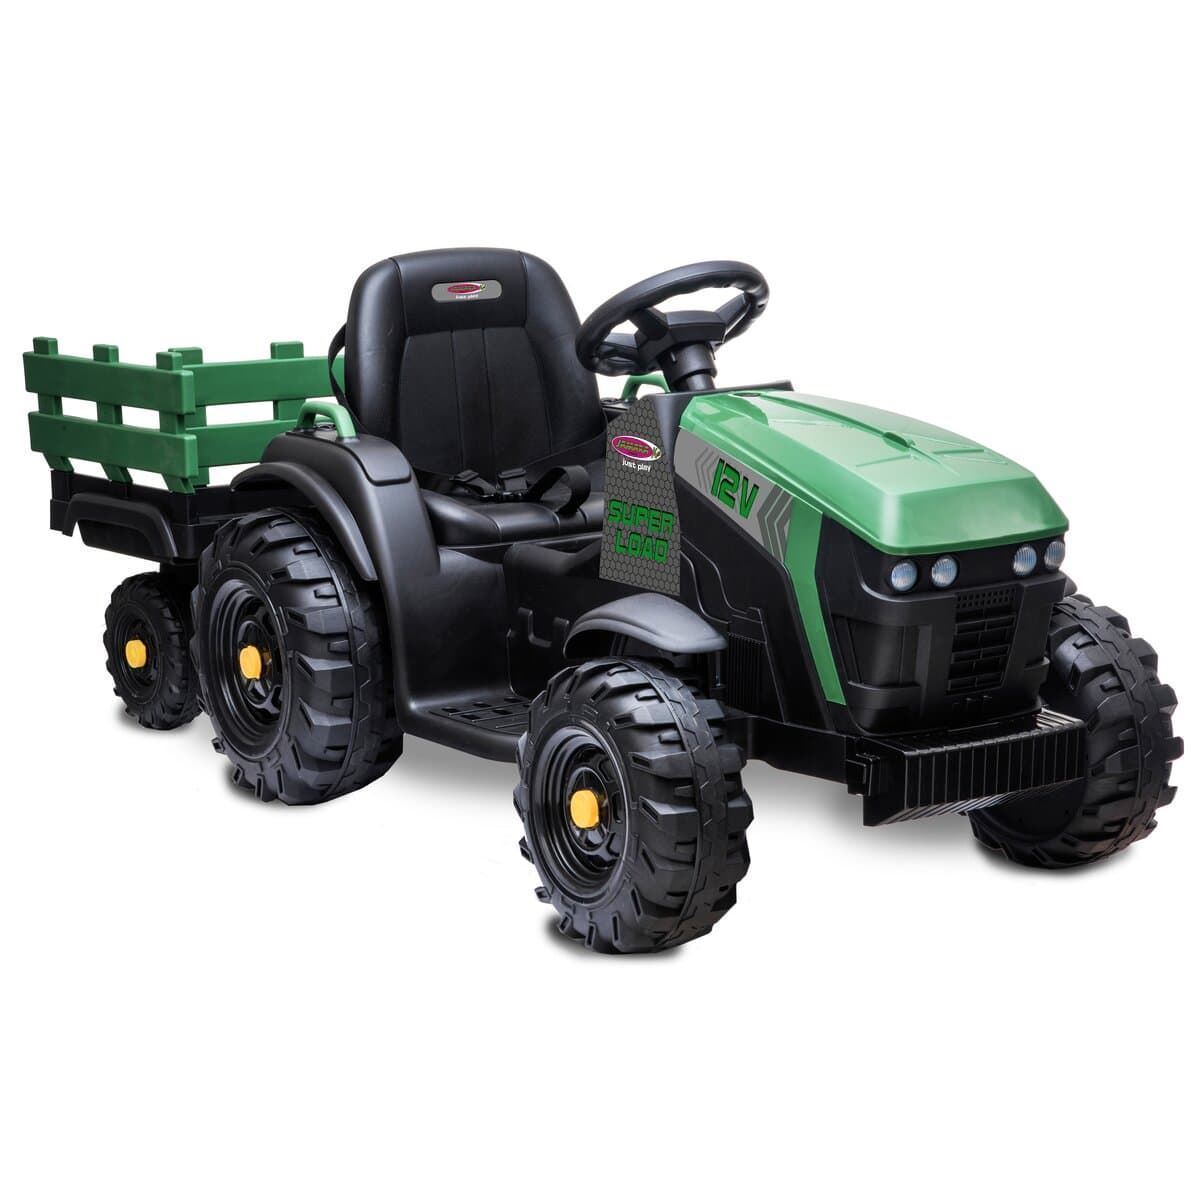 Tractor de batería 12v con remolque verde jamara 460896 - Imagen 2